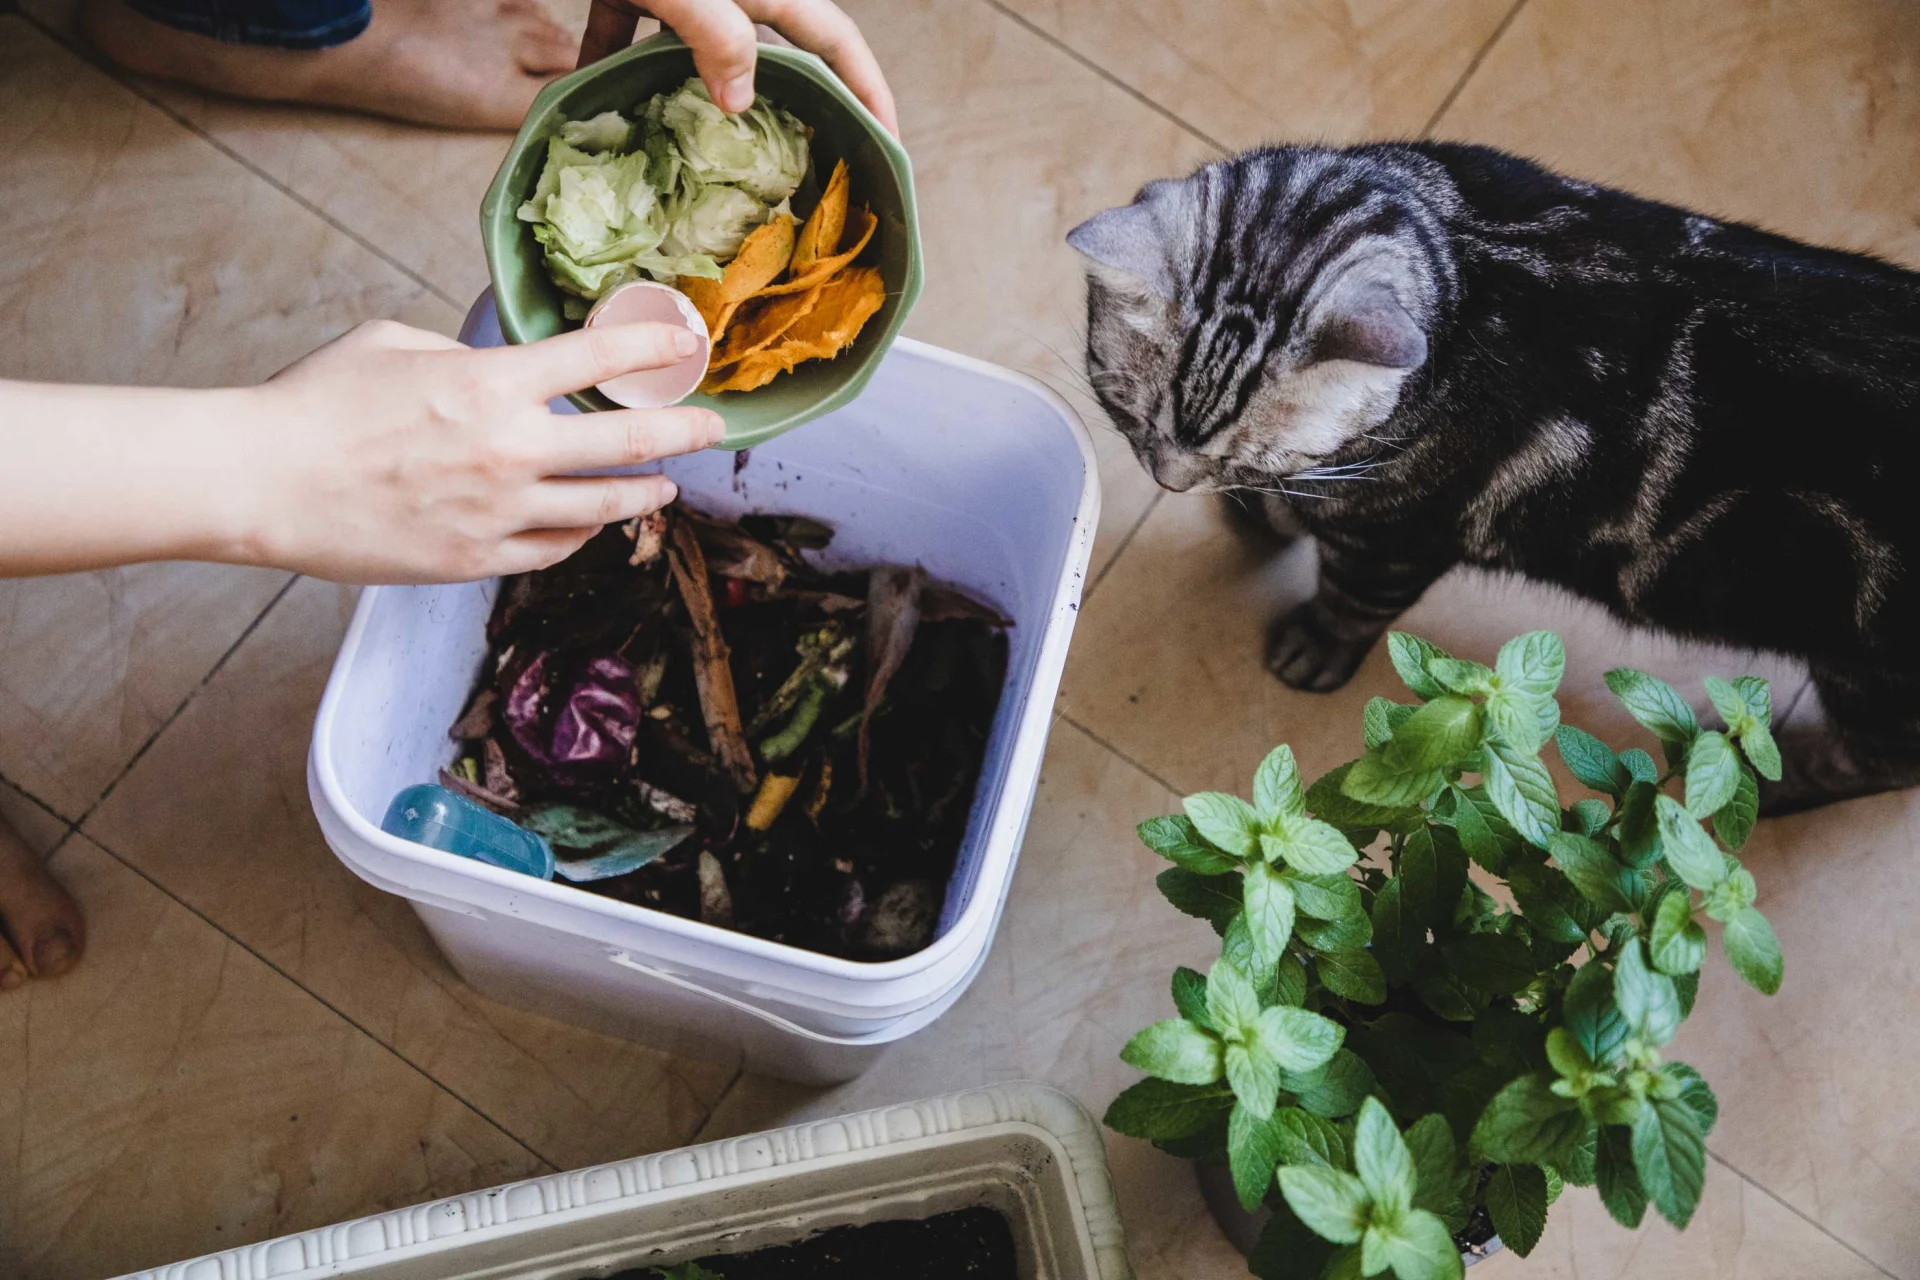 Une femme jette des restes de nourriture dans un bac à compost, à côté d'elle un chat curieux la regarde